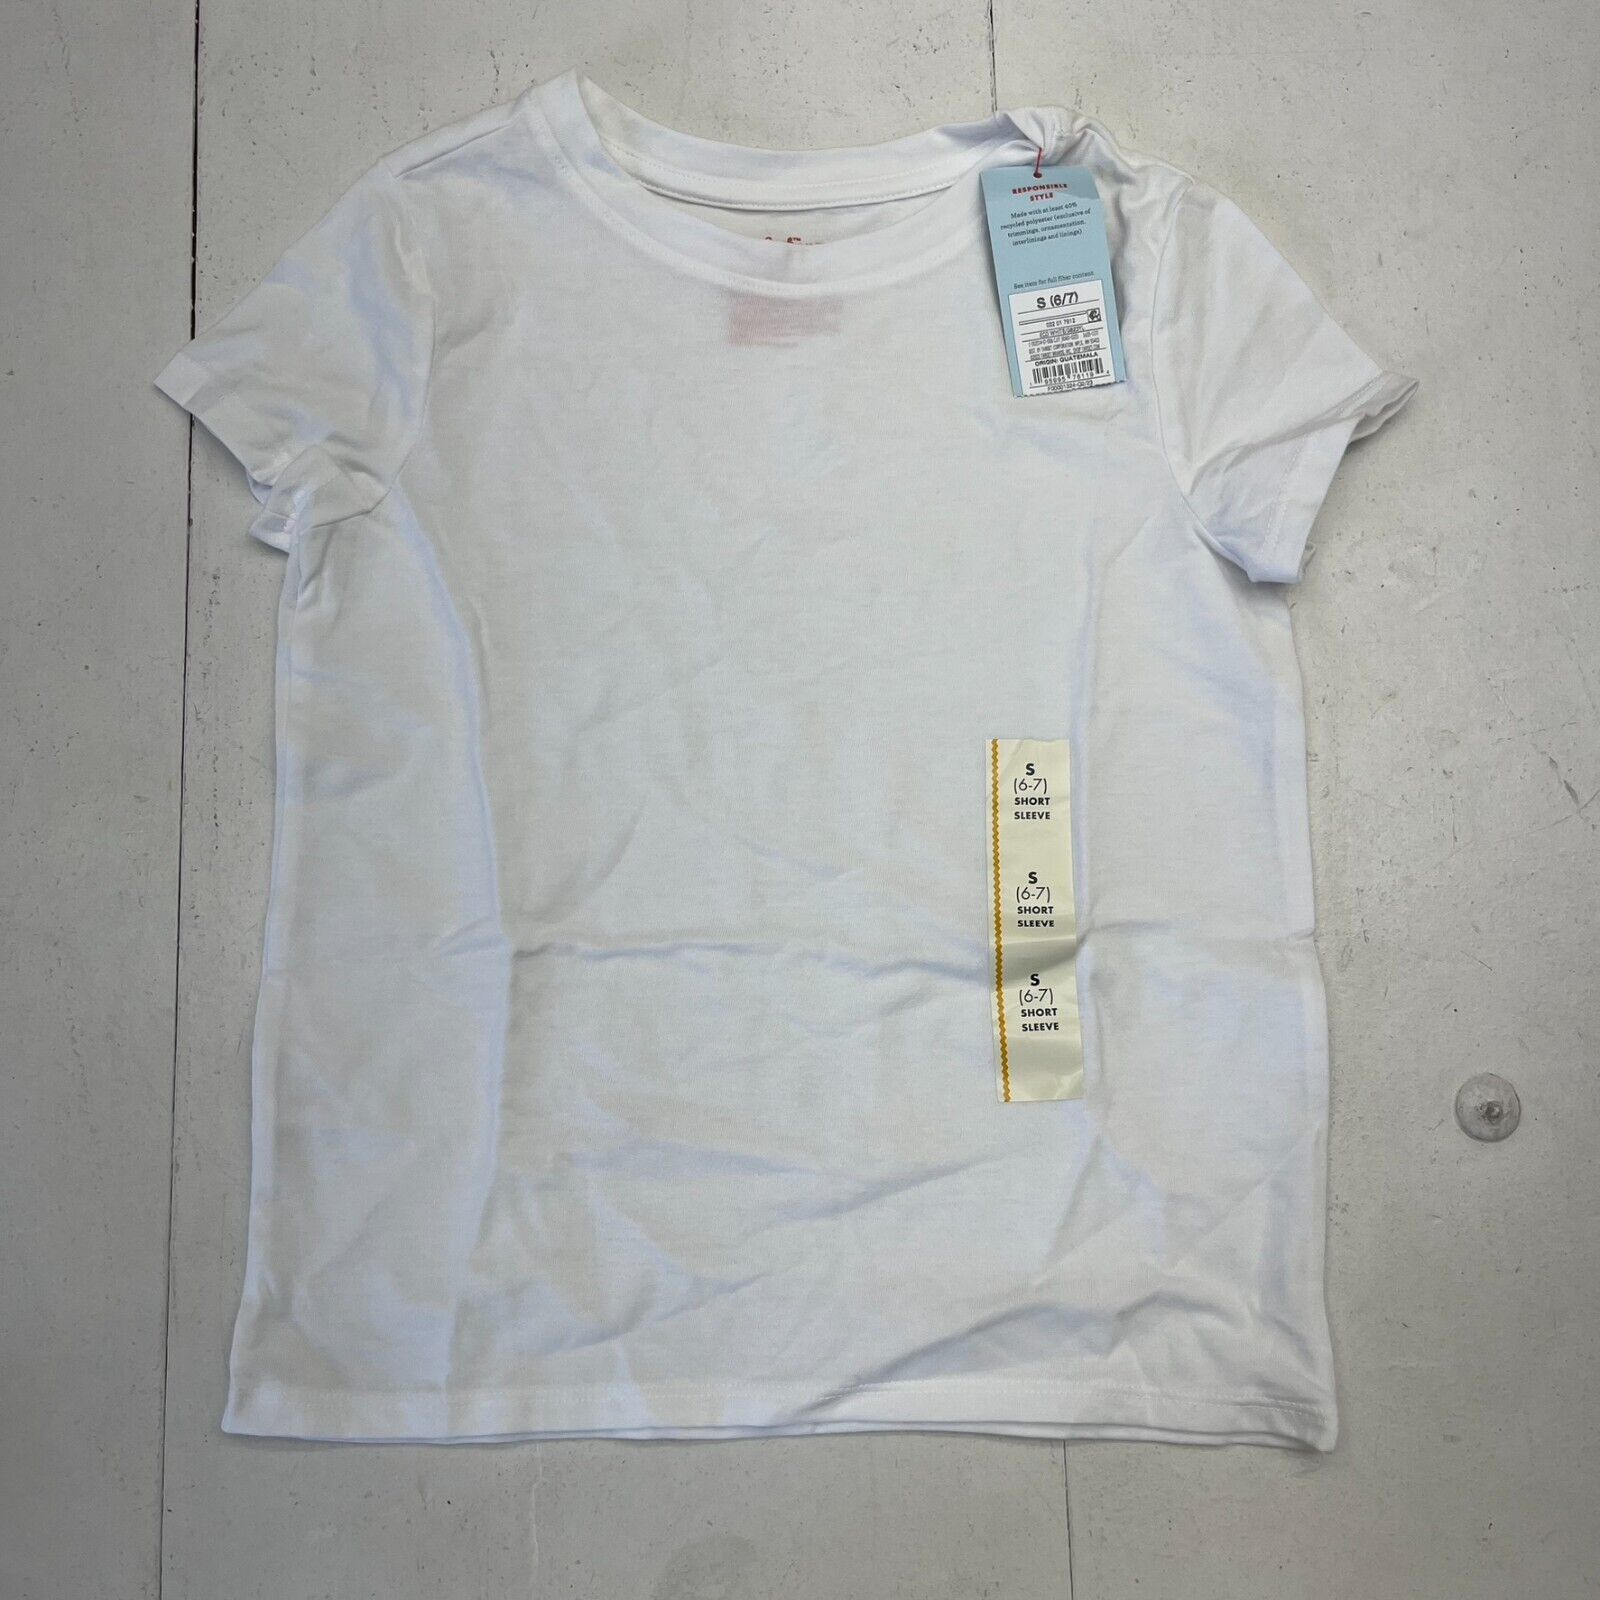 Cat & Jack White Basic Short Sleeve T-Shirt Unisex Kids Size Small NEW